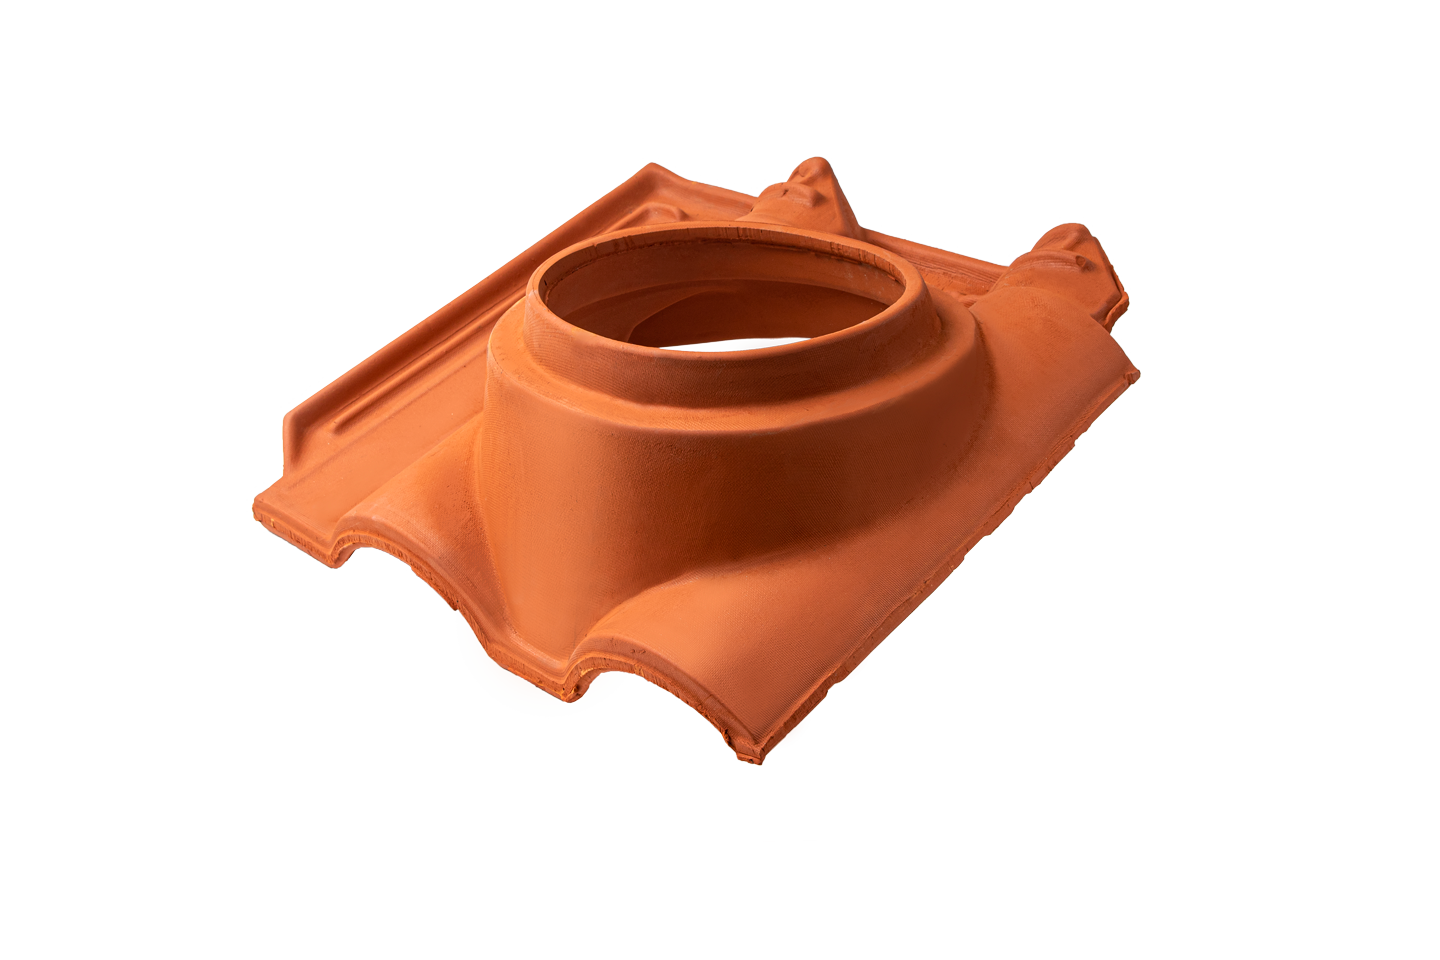 Țiglă de trecere din ceramică pentru evacuare gaze Ø 20 cm